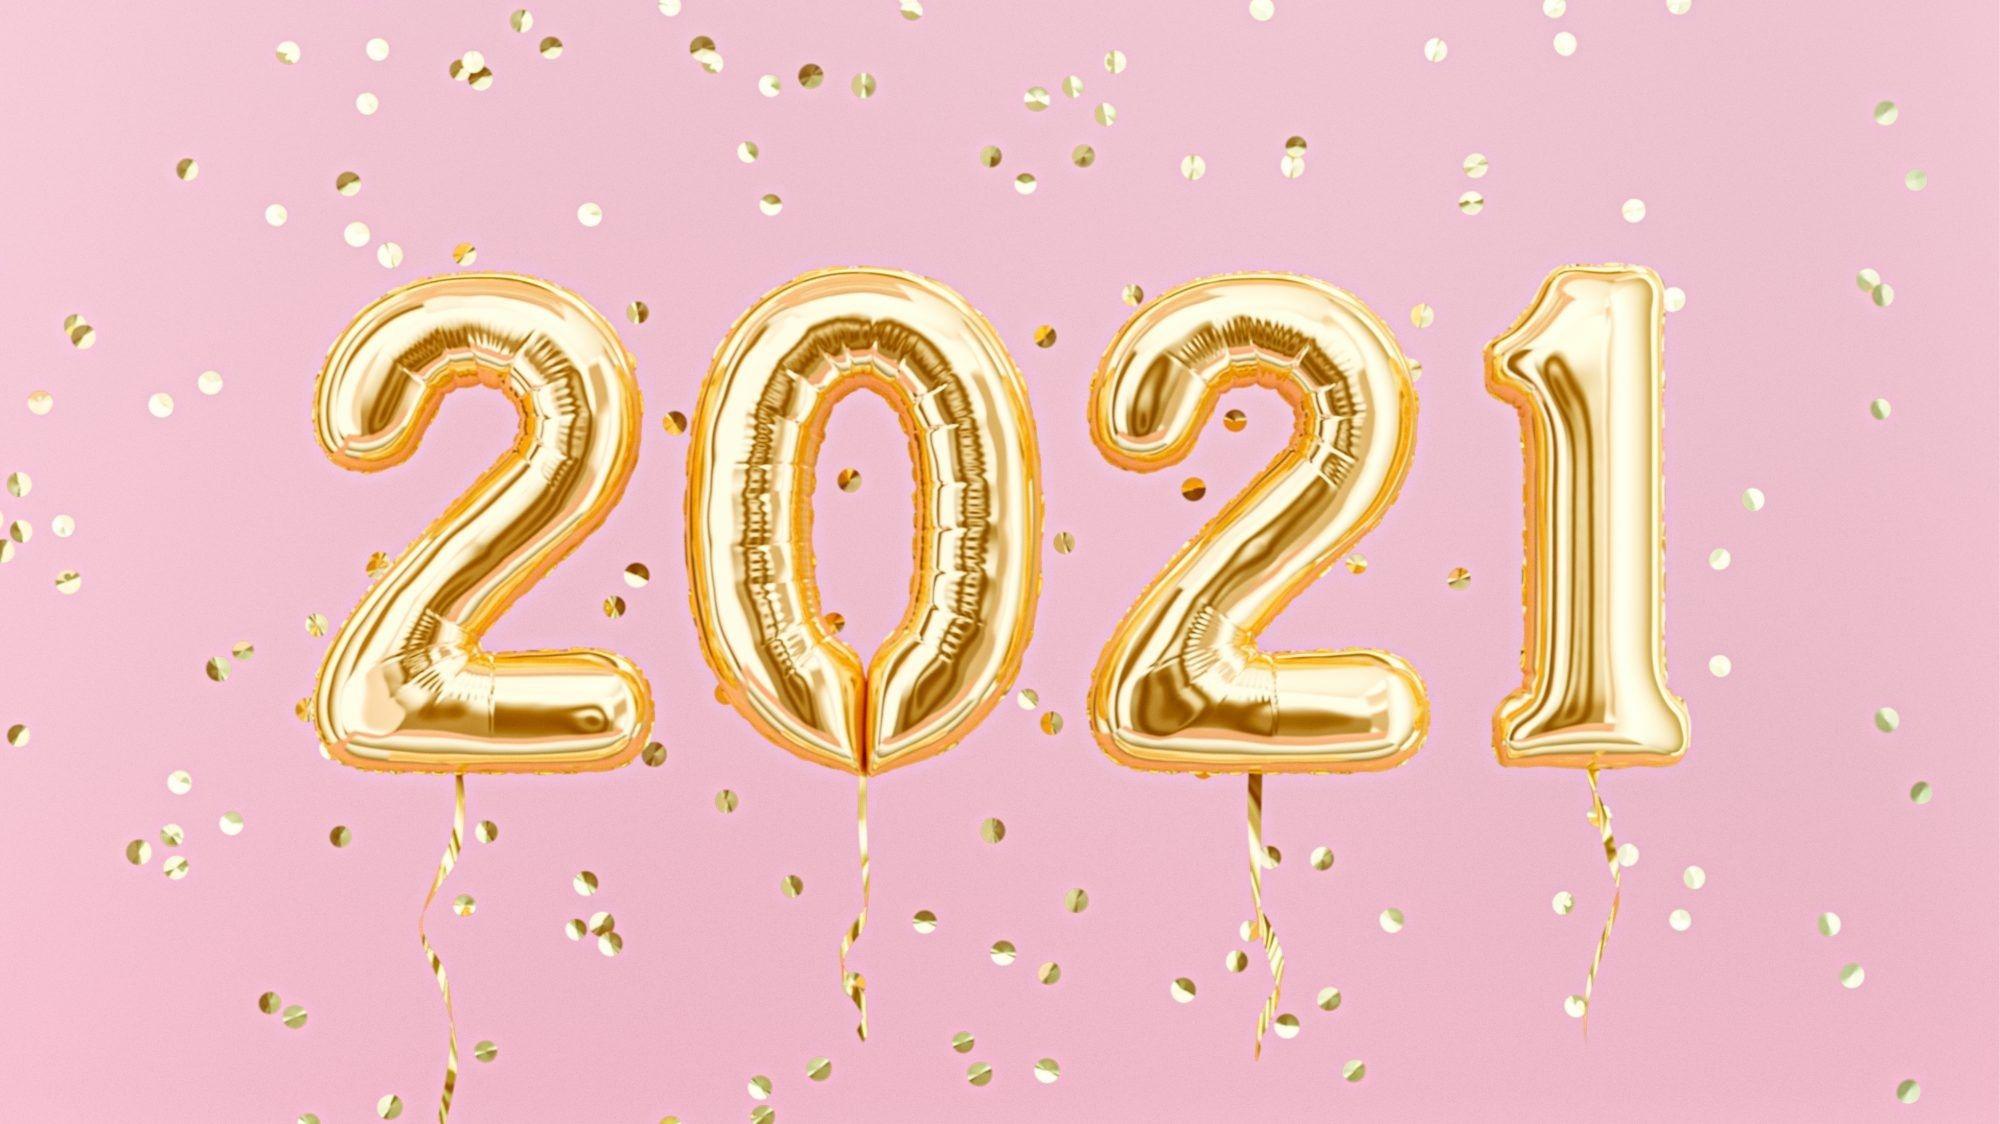 130+ câu chúc năm mới bằng Tiếng Anh hay và ý nghĩa nhất 2021 2021 câu chúc câu chúc hay Chúc mừng năm mới chúc năm mới bằng Tiếng Anh chúc năm mới cho gia đình chúc năm mới cho người yêu chúc tết lời chúc lời chúc hay lời chúc năm mới cho đồng nghiệp lời chúc Tết hay 2021 năm mới Tết Tân Sửu 2021